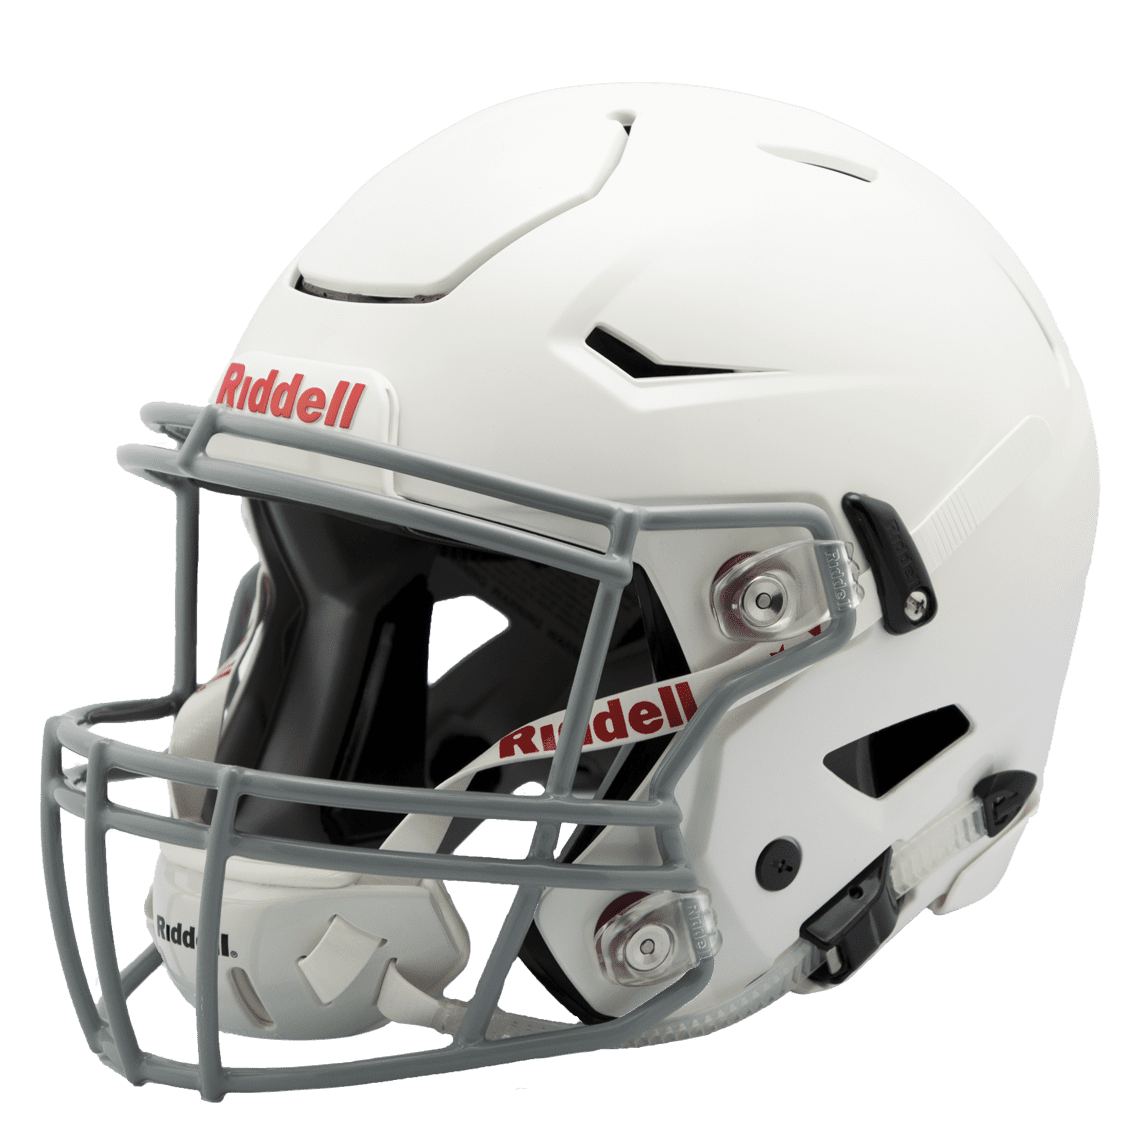 Riddell Speedflex Youth Football Helmet,White/Gray, Medium - Walmart.com -  Walmart.com